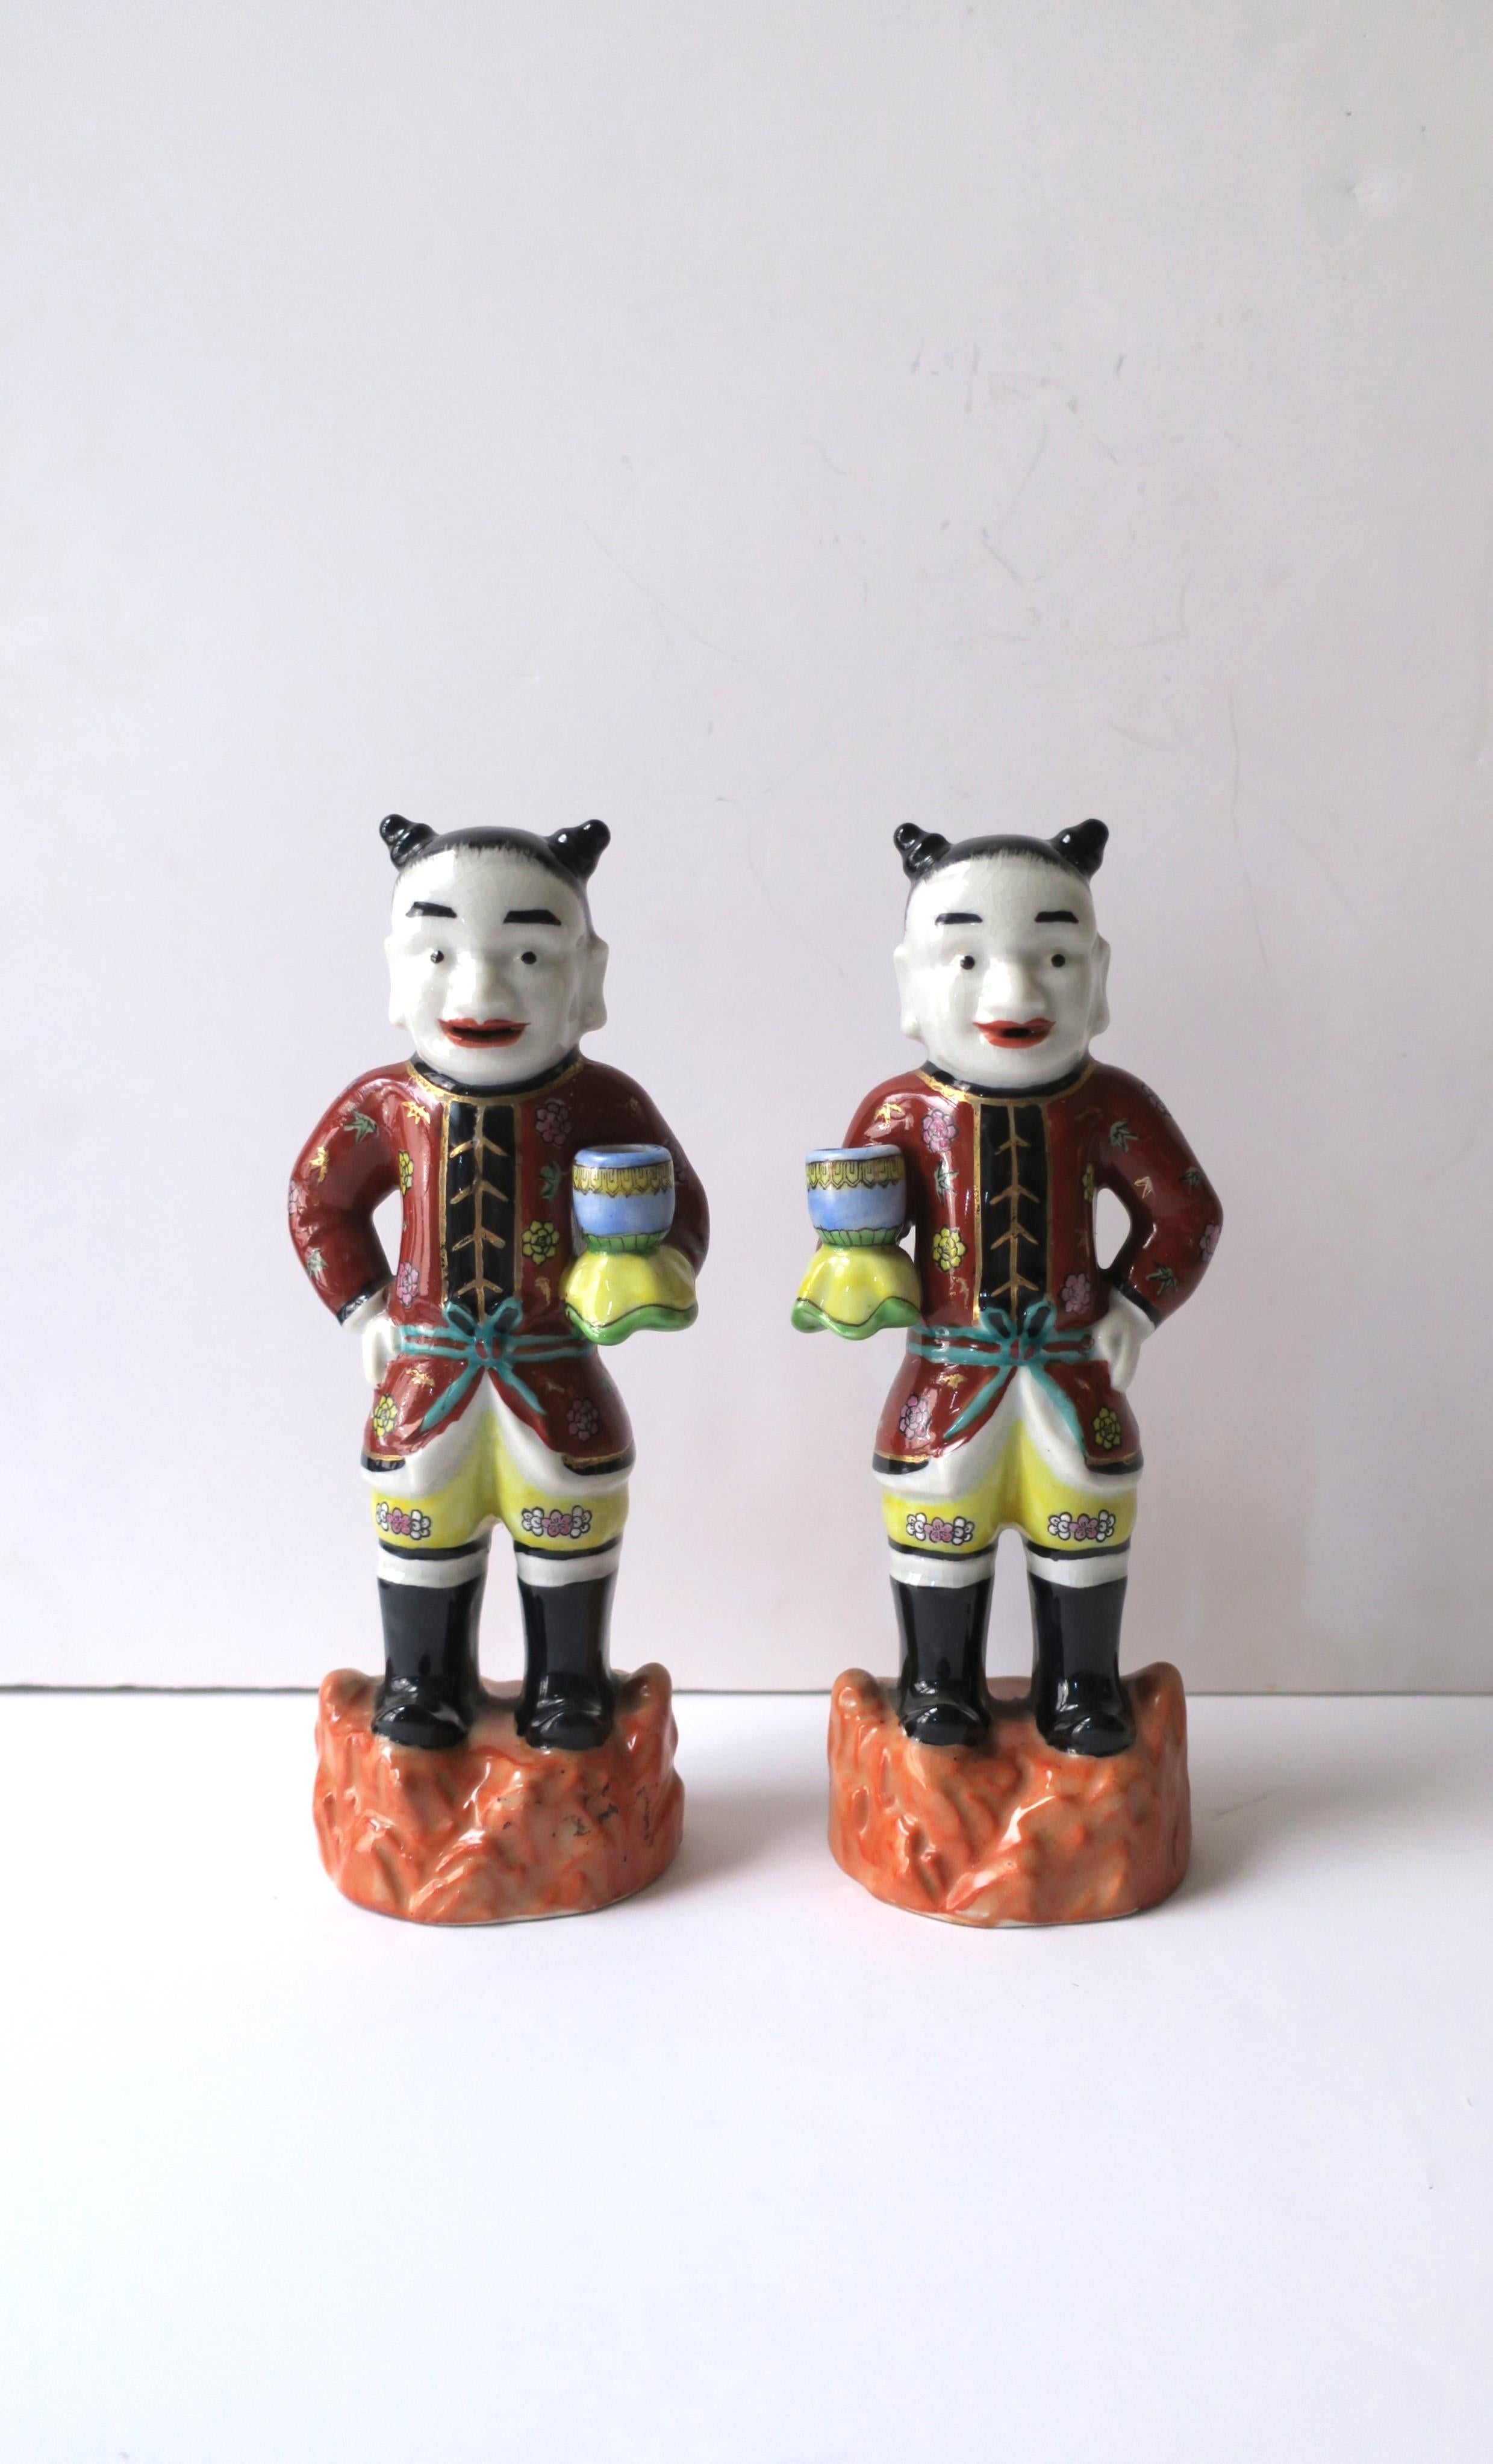 Magnifique paire de figurines masculines asiatiques en céramique peinte à la main, de style Chinoiserie, vers le milieu du XXe siècle, Hong Kong britannique. Peint à la main dans des couleurs riches et vives qui mettent en valeur leur tenue formelle